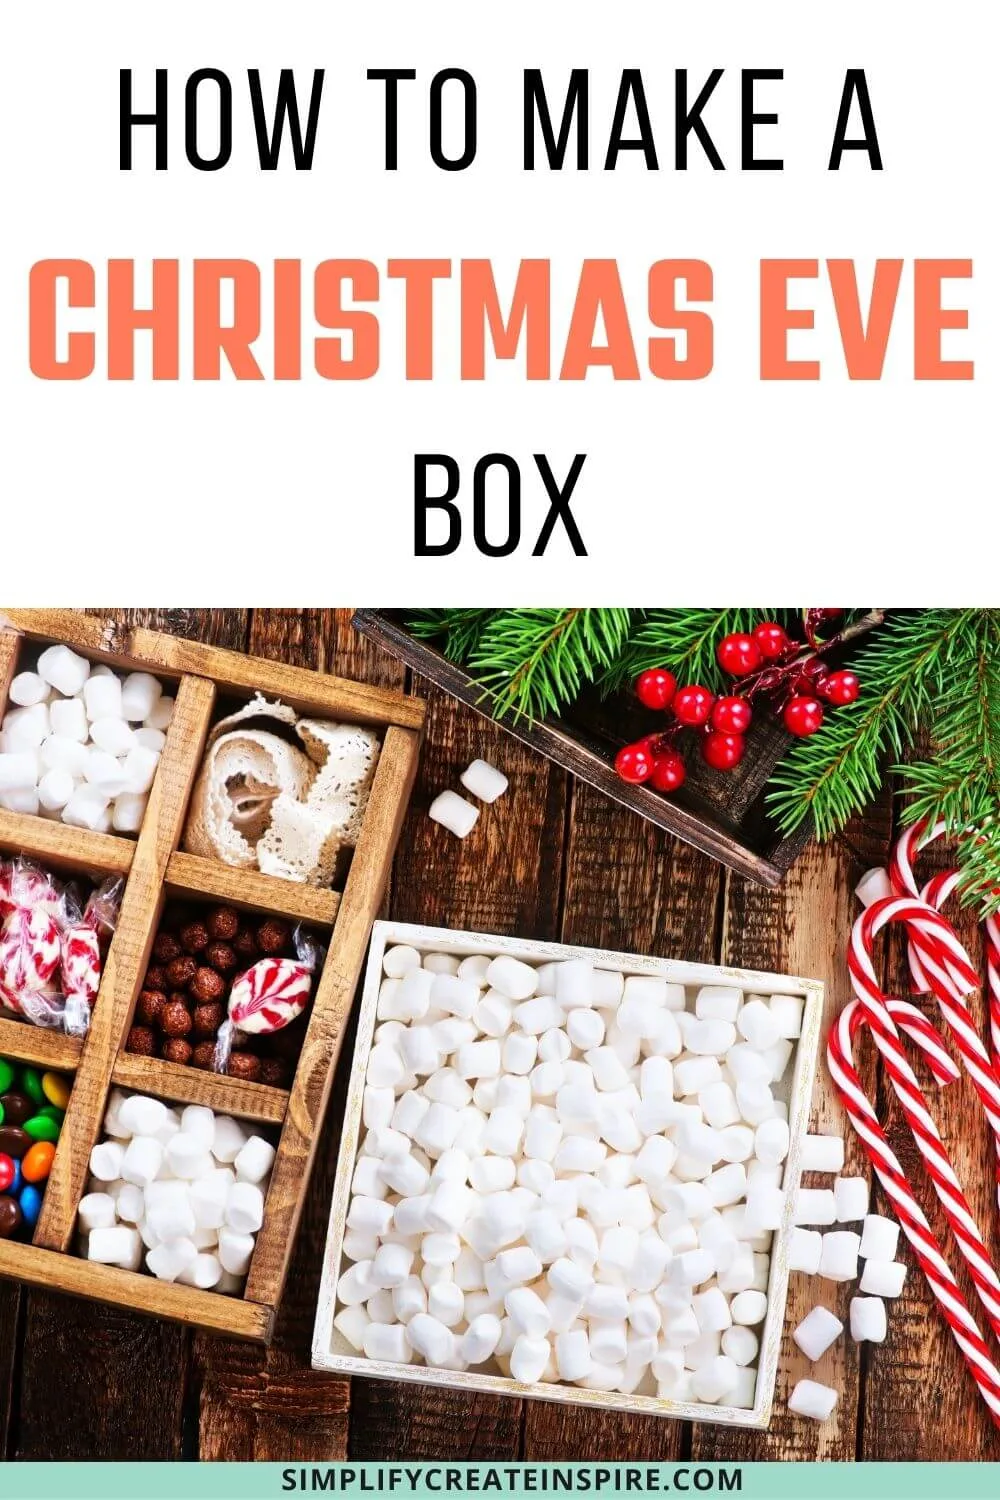 Christmas eve box ideas